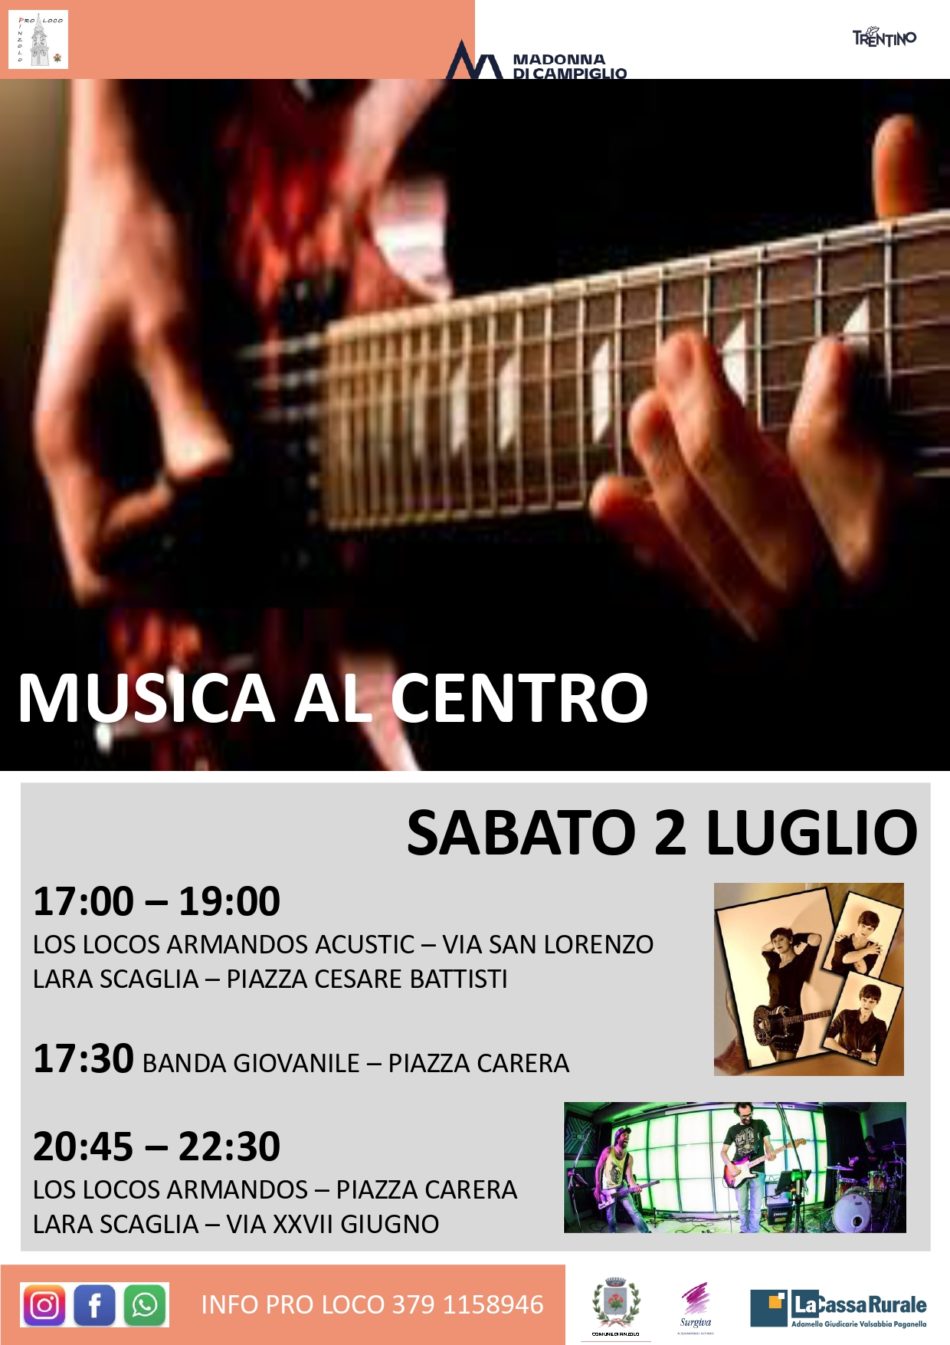 Sabato 2 luglio a Pinzolo: “Musica al centro”